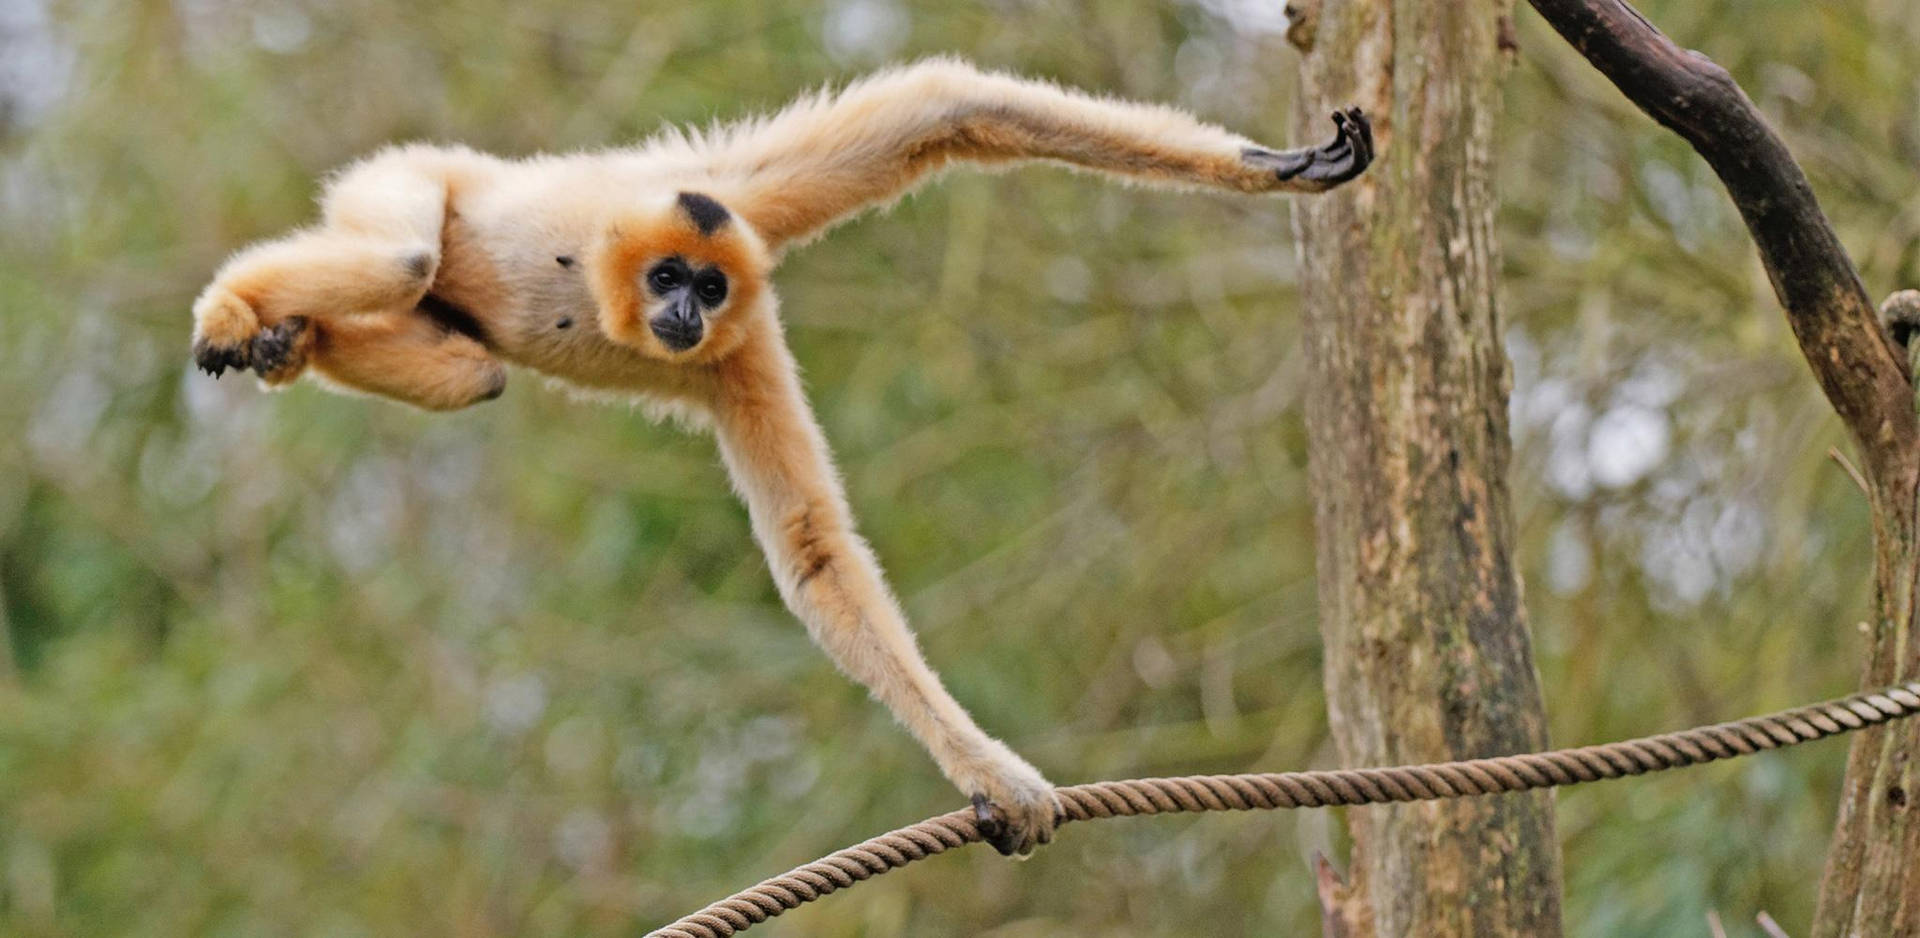 Gibbon Swinging On Rope Background